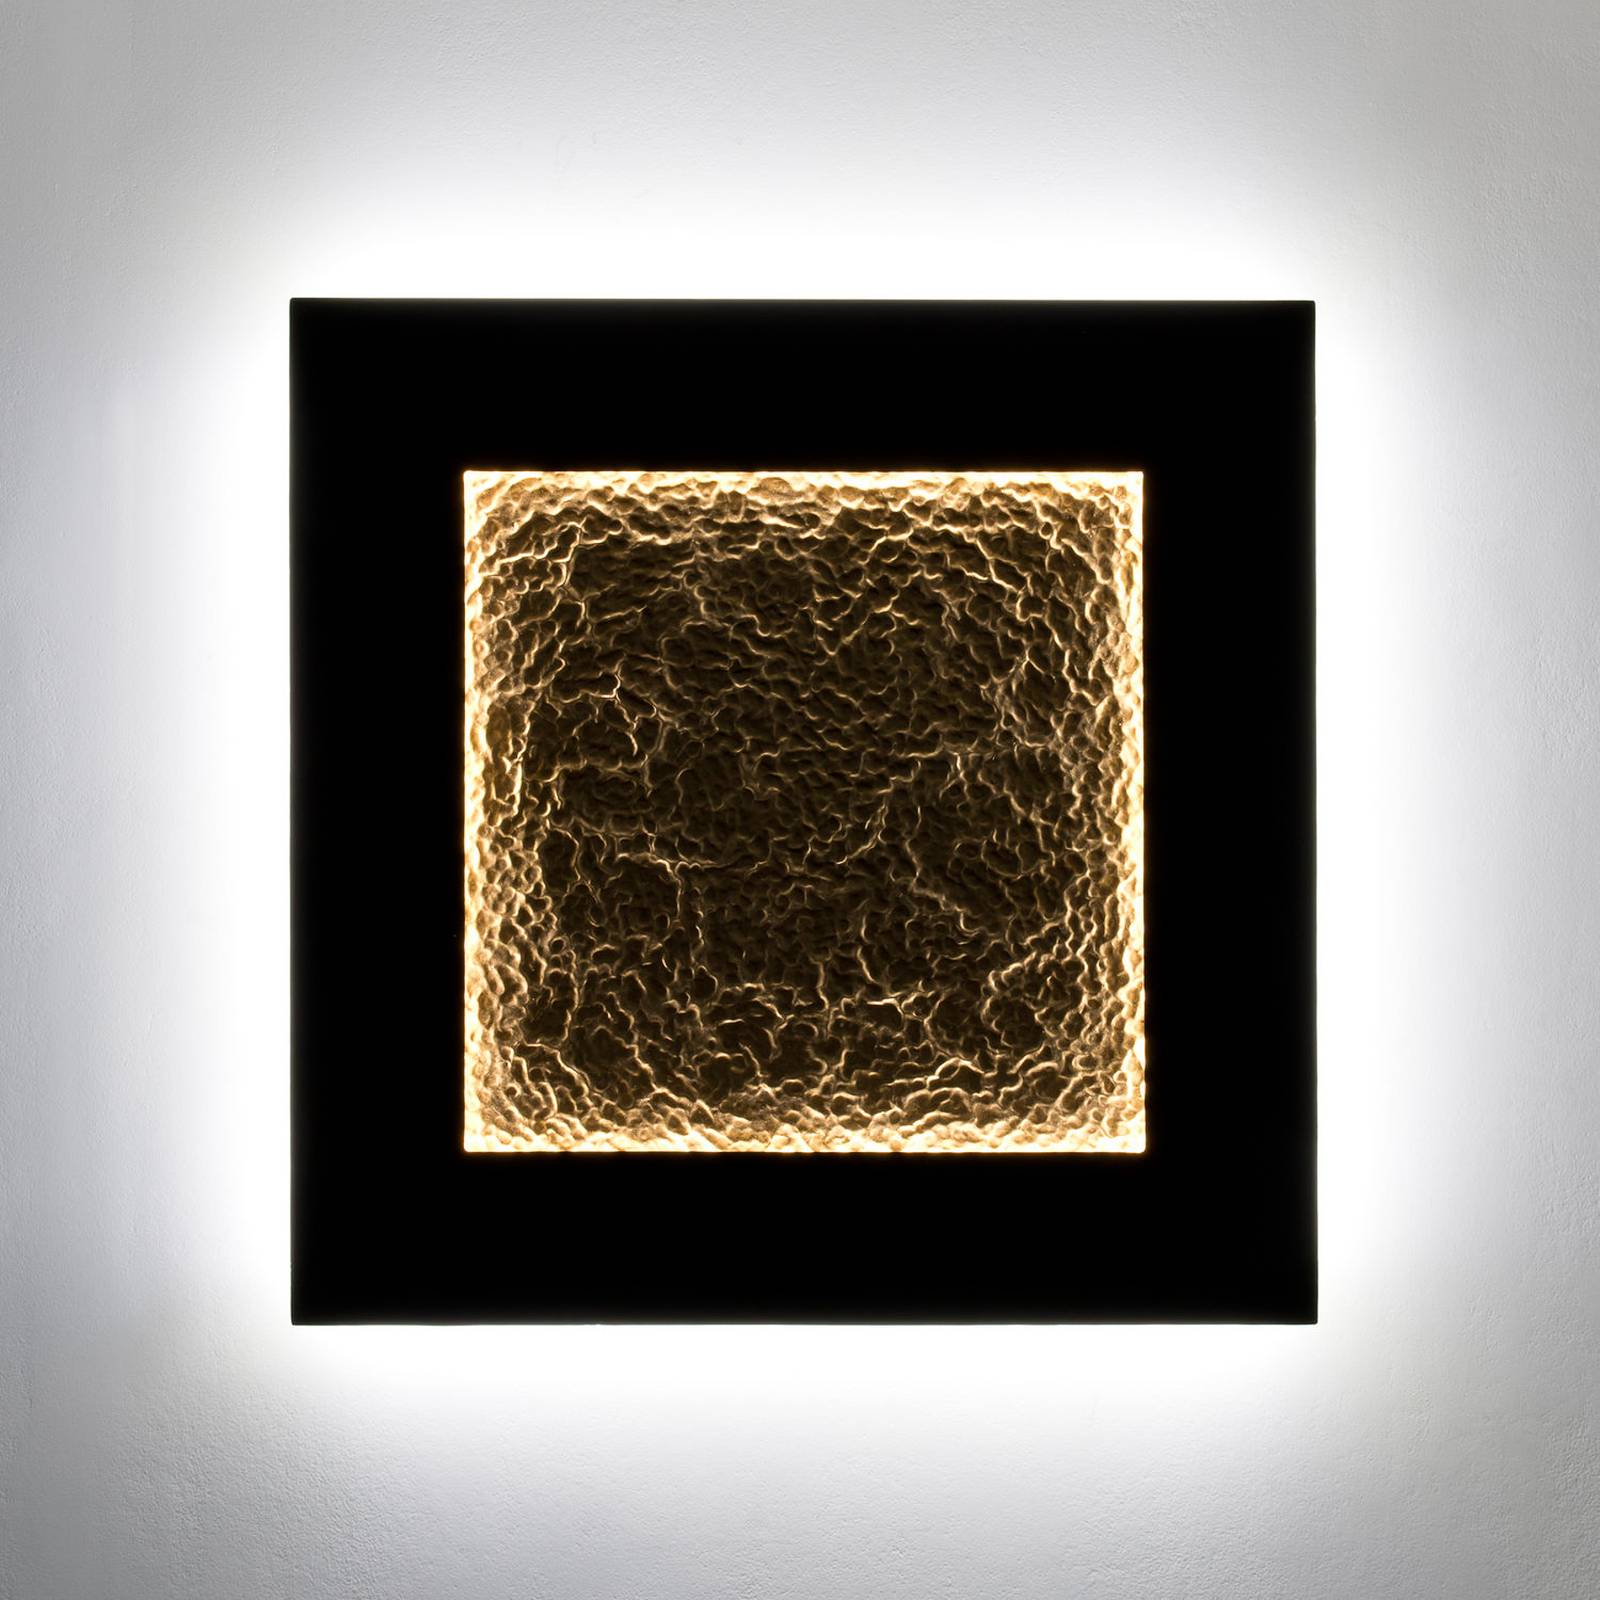 Holländer plenilunio eclipse led-es fali lámpa, barna/arany színű, 80 cm-es